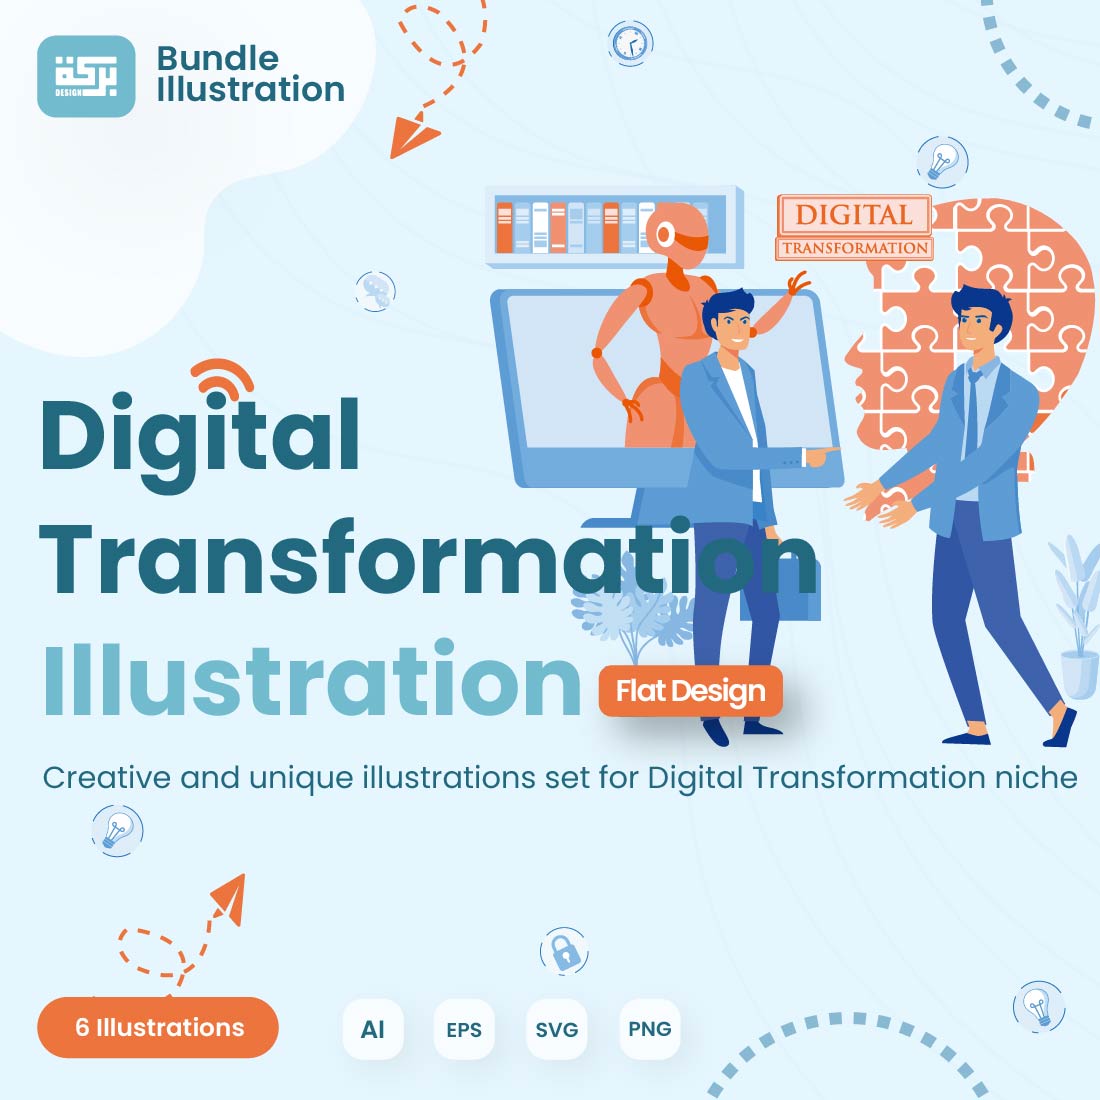 Illustration Design Digital Transformation cover image.